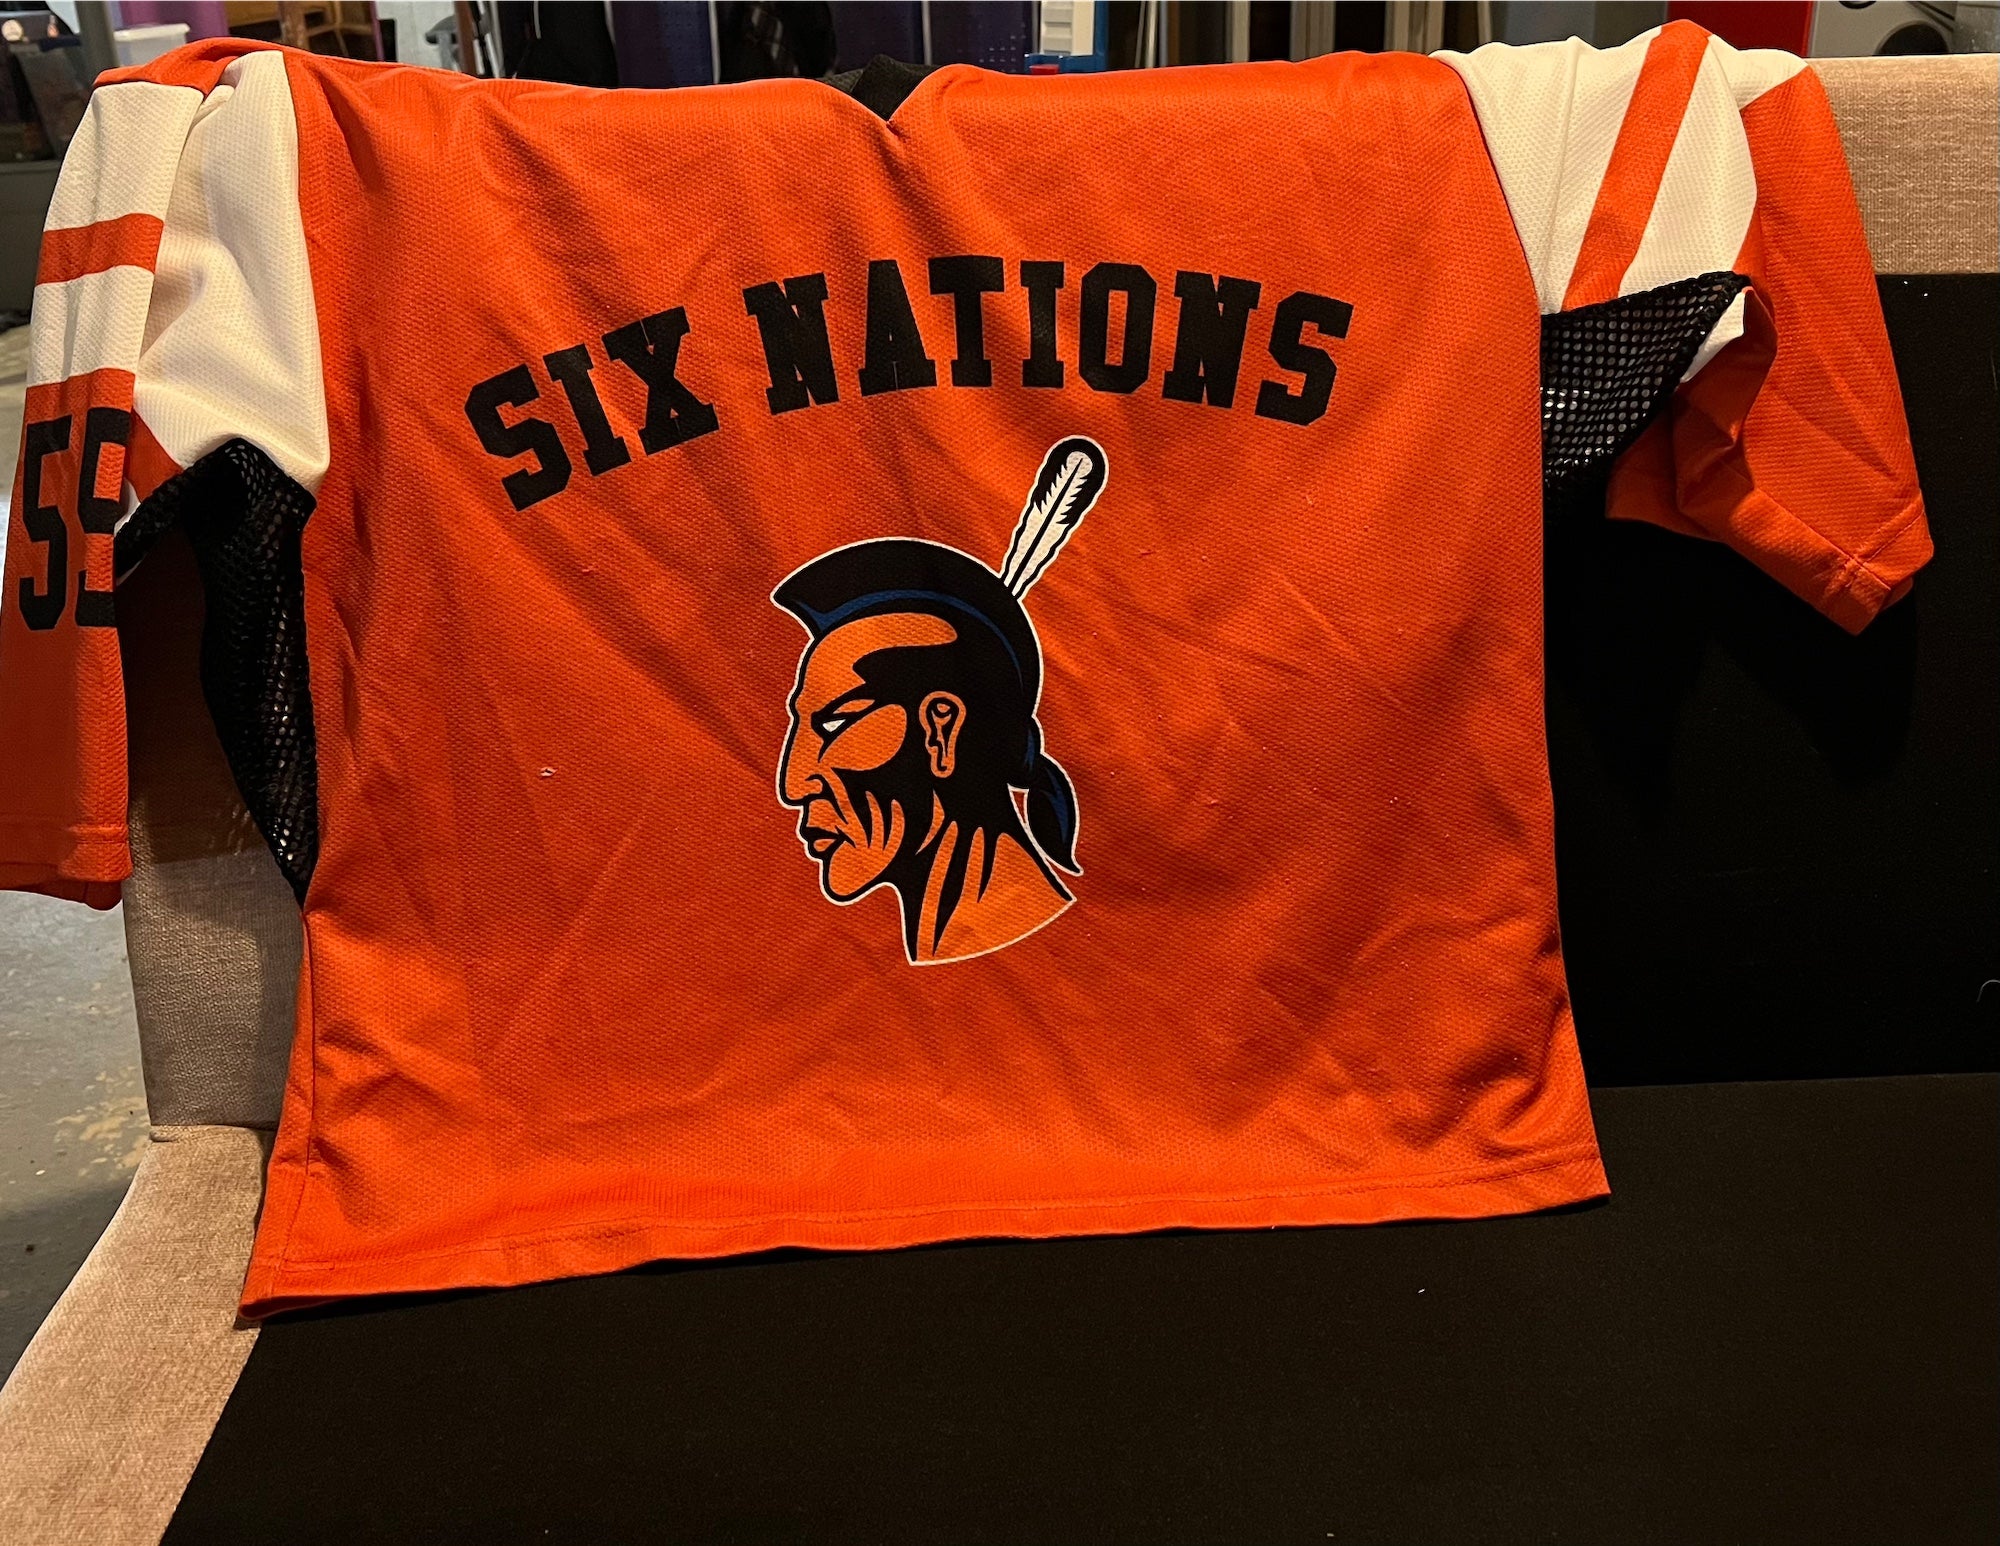 Youngstown Phantoms XL jersey